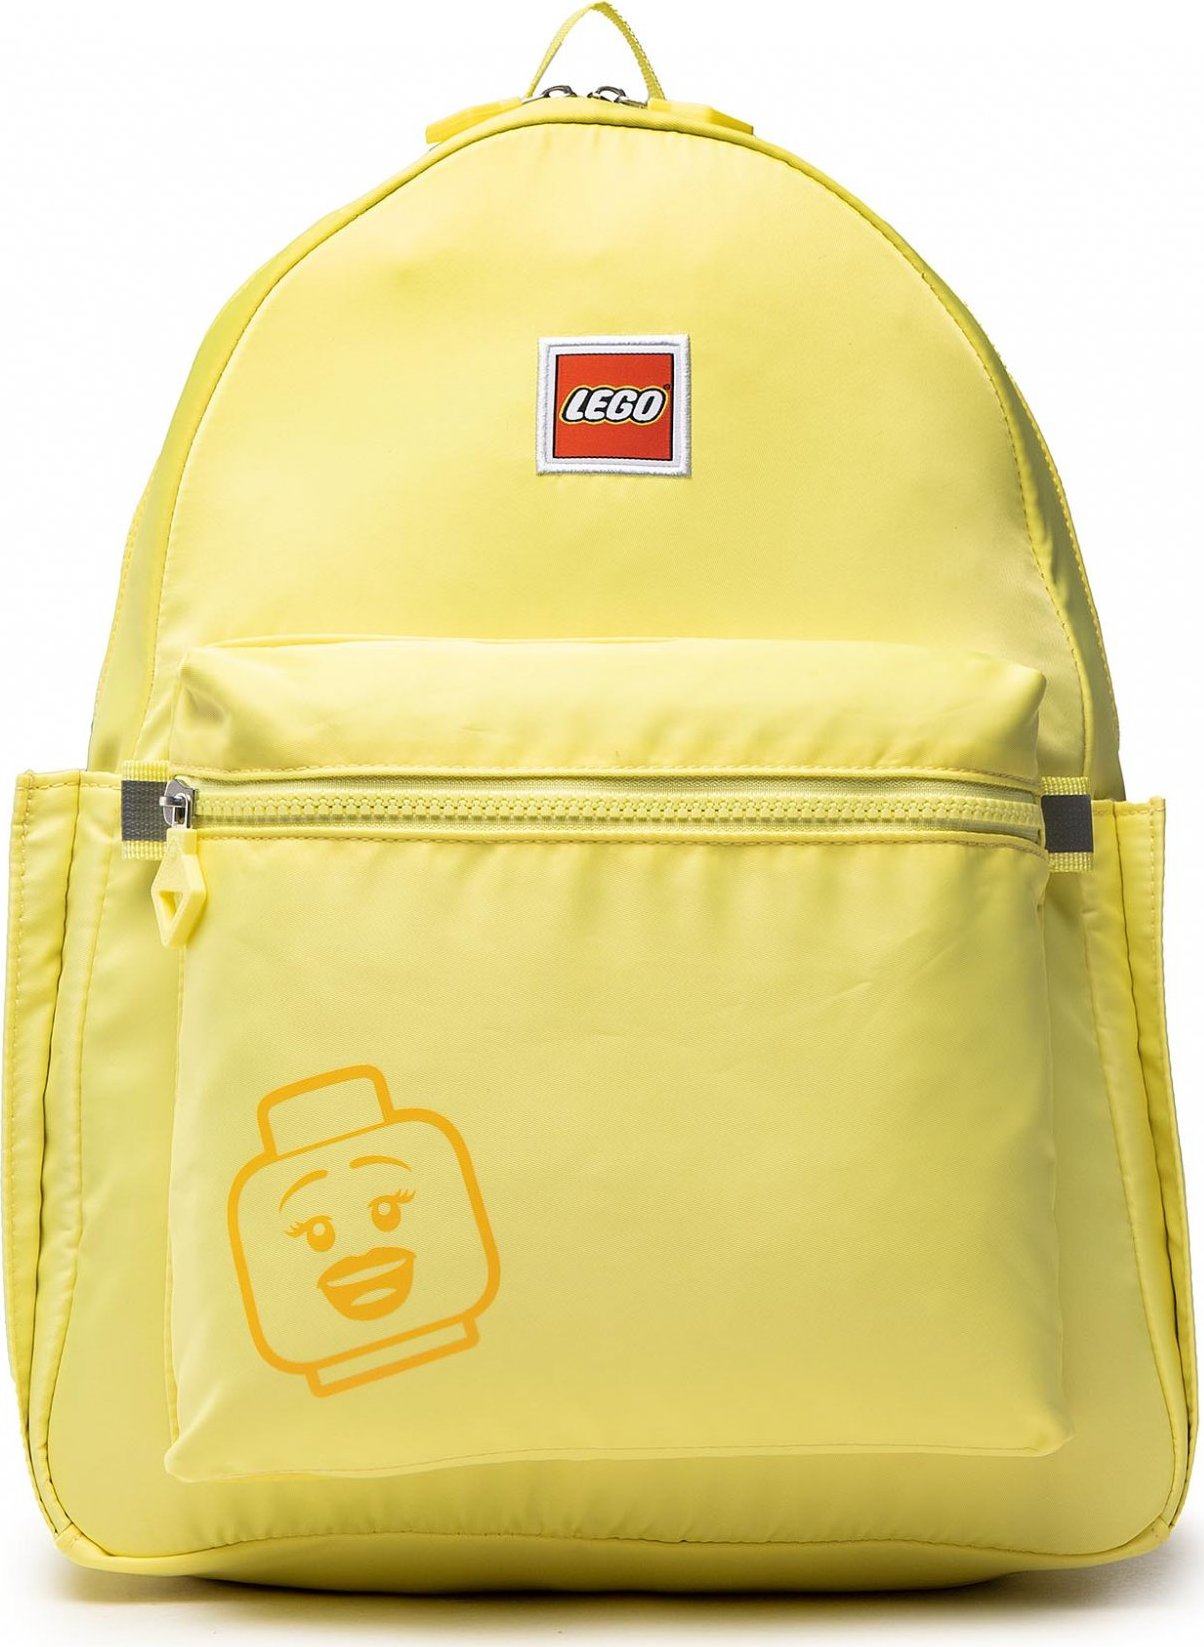 LEGO Tribini Joy Backpack Large 20130-1937